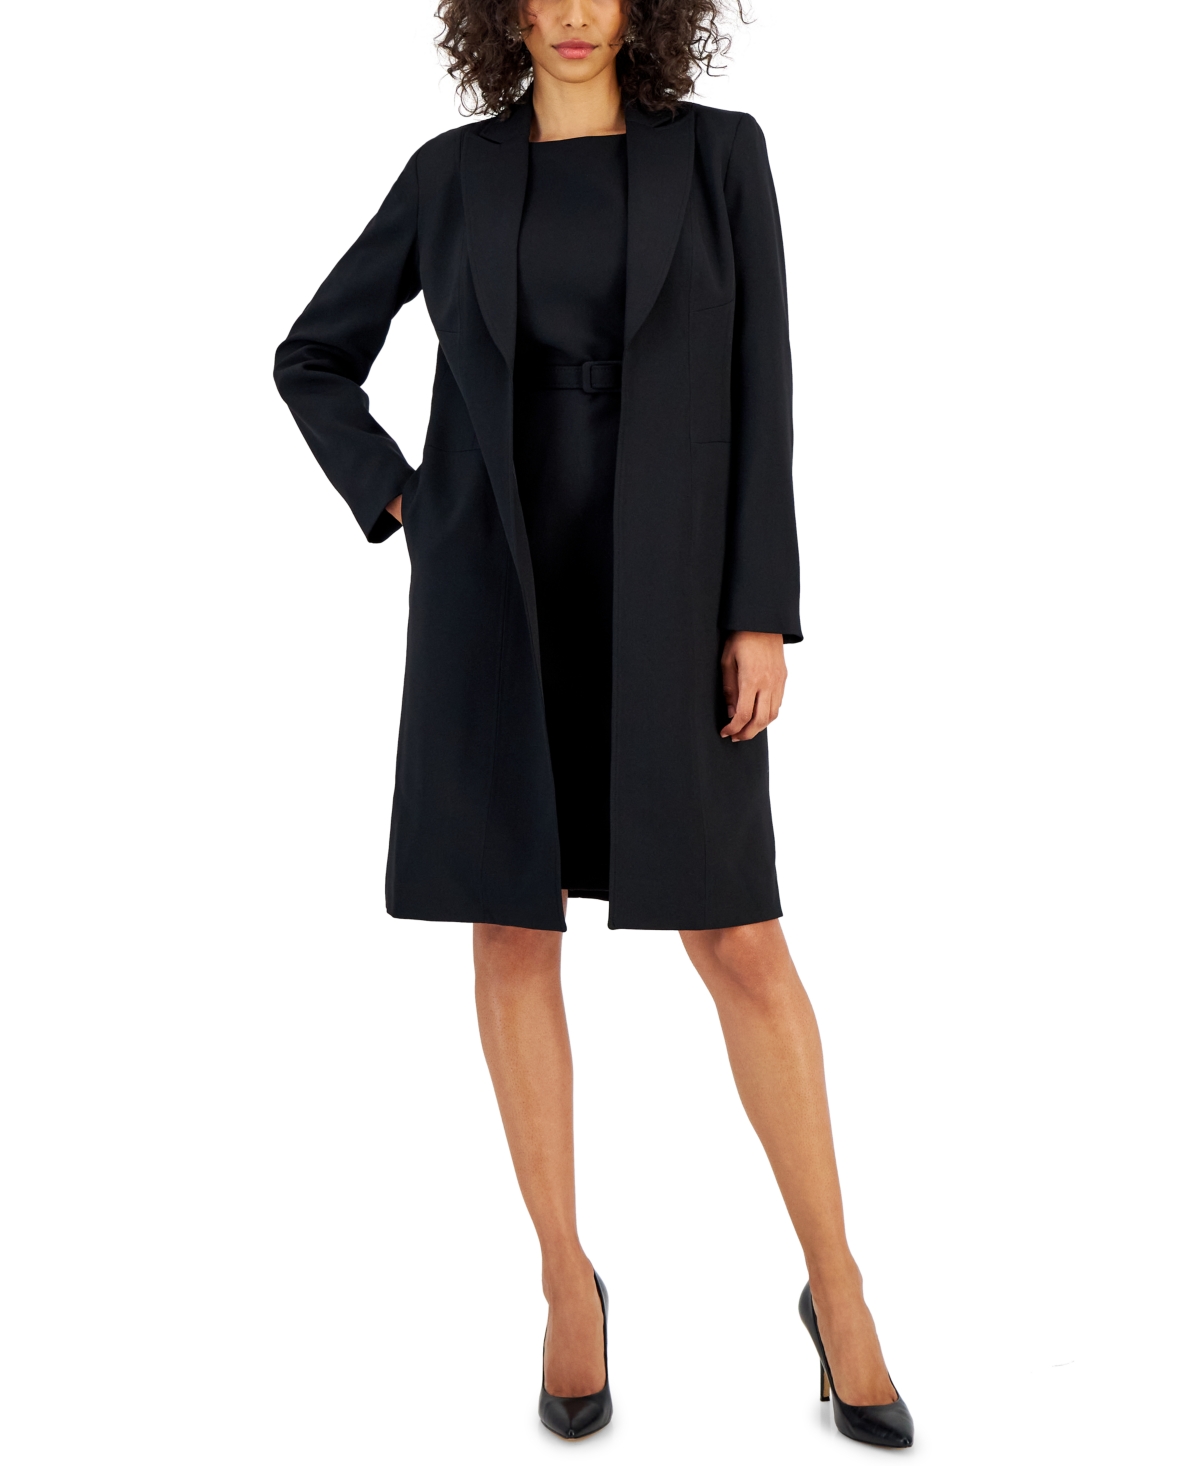 Nipon Boutique Women's Longline Jacket Topper & Belted Sleeveless Sheath Dress In Black